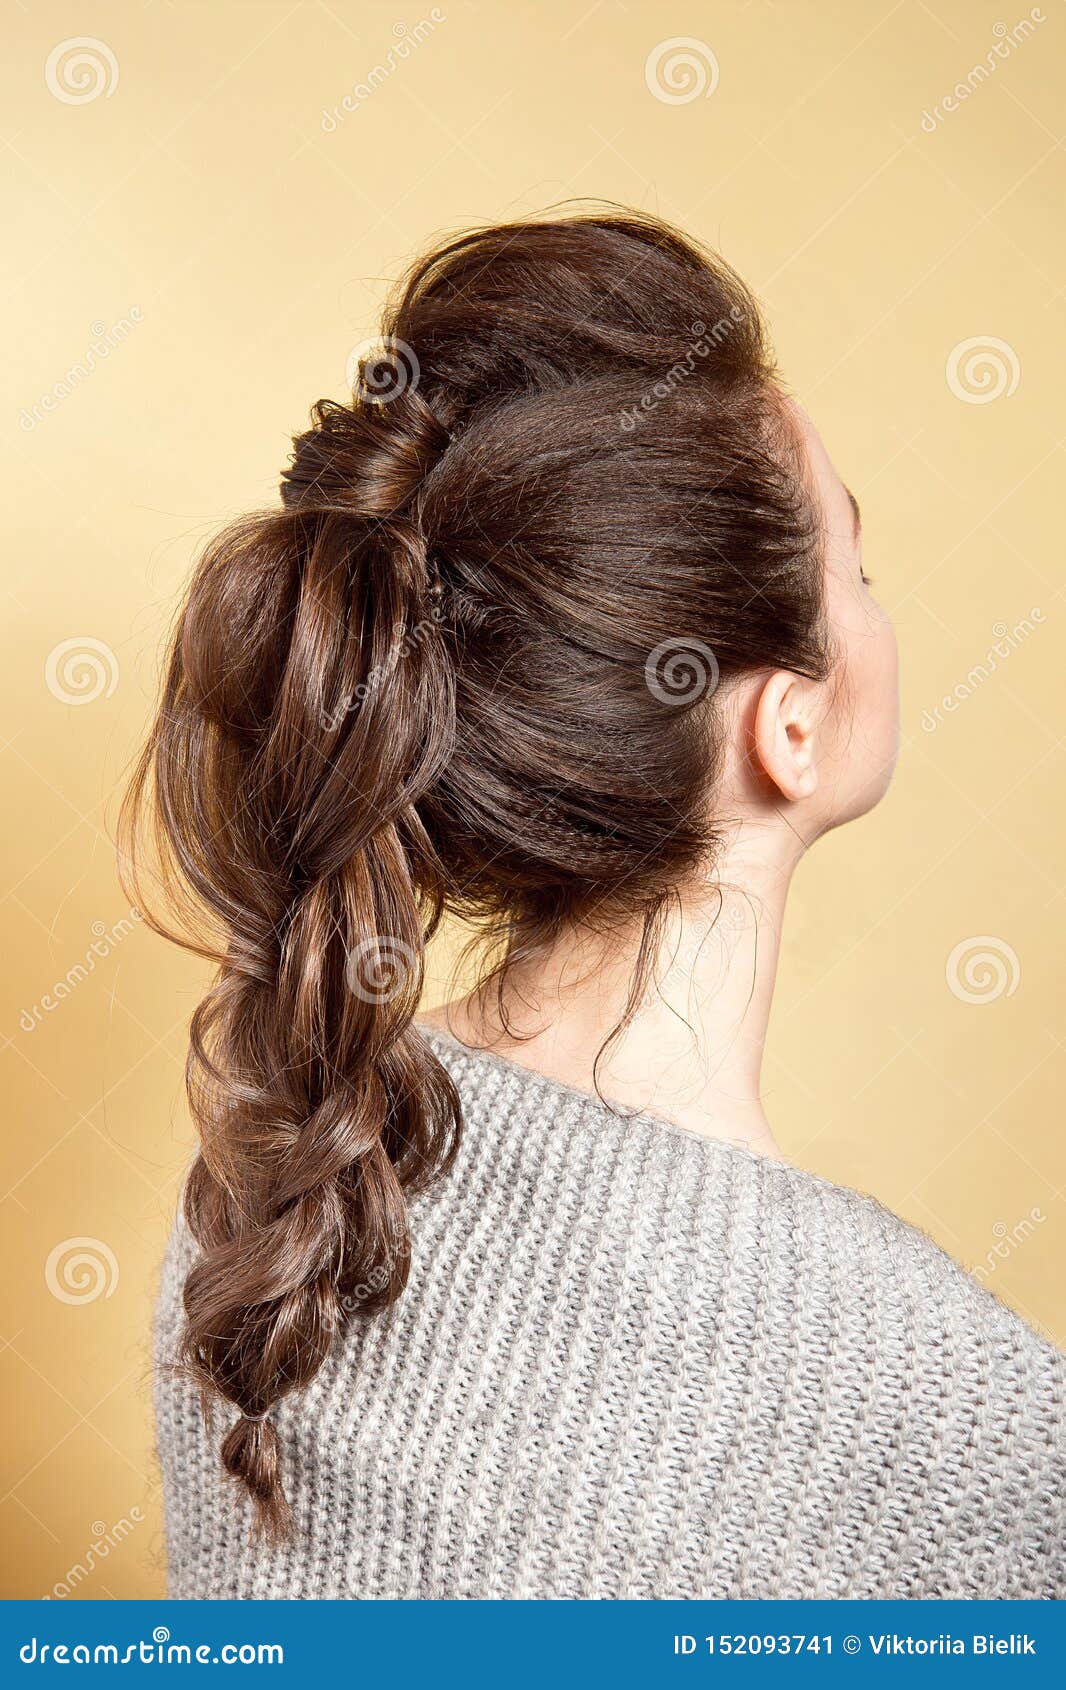 Каштановые Волосы У Девушек Фото Сзади